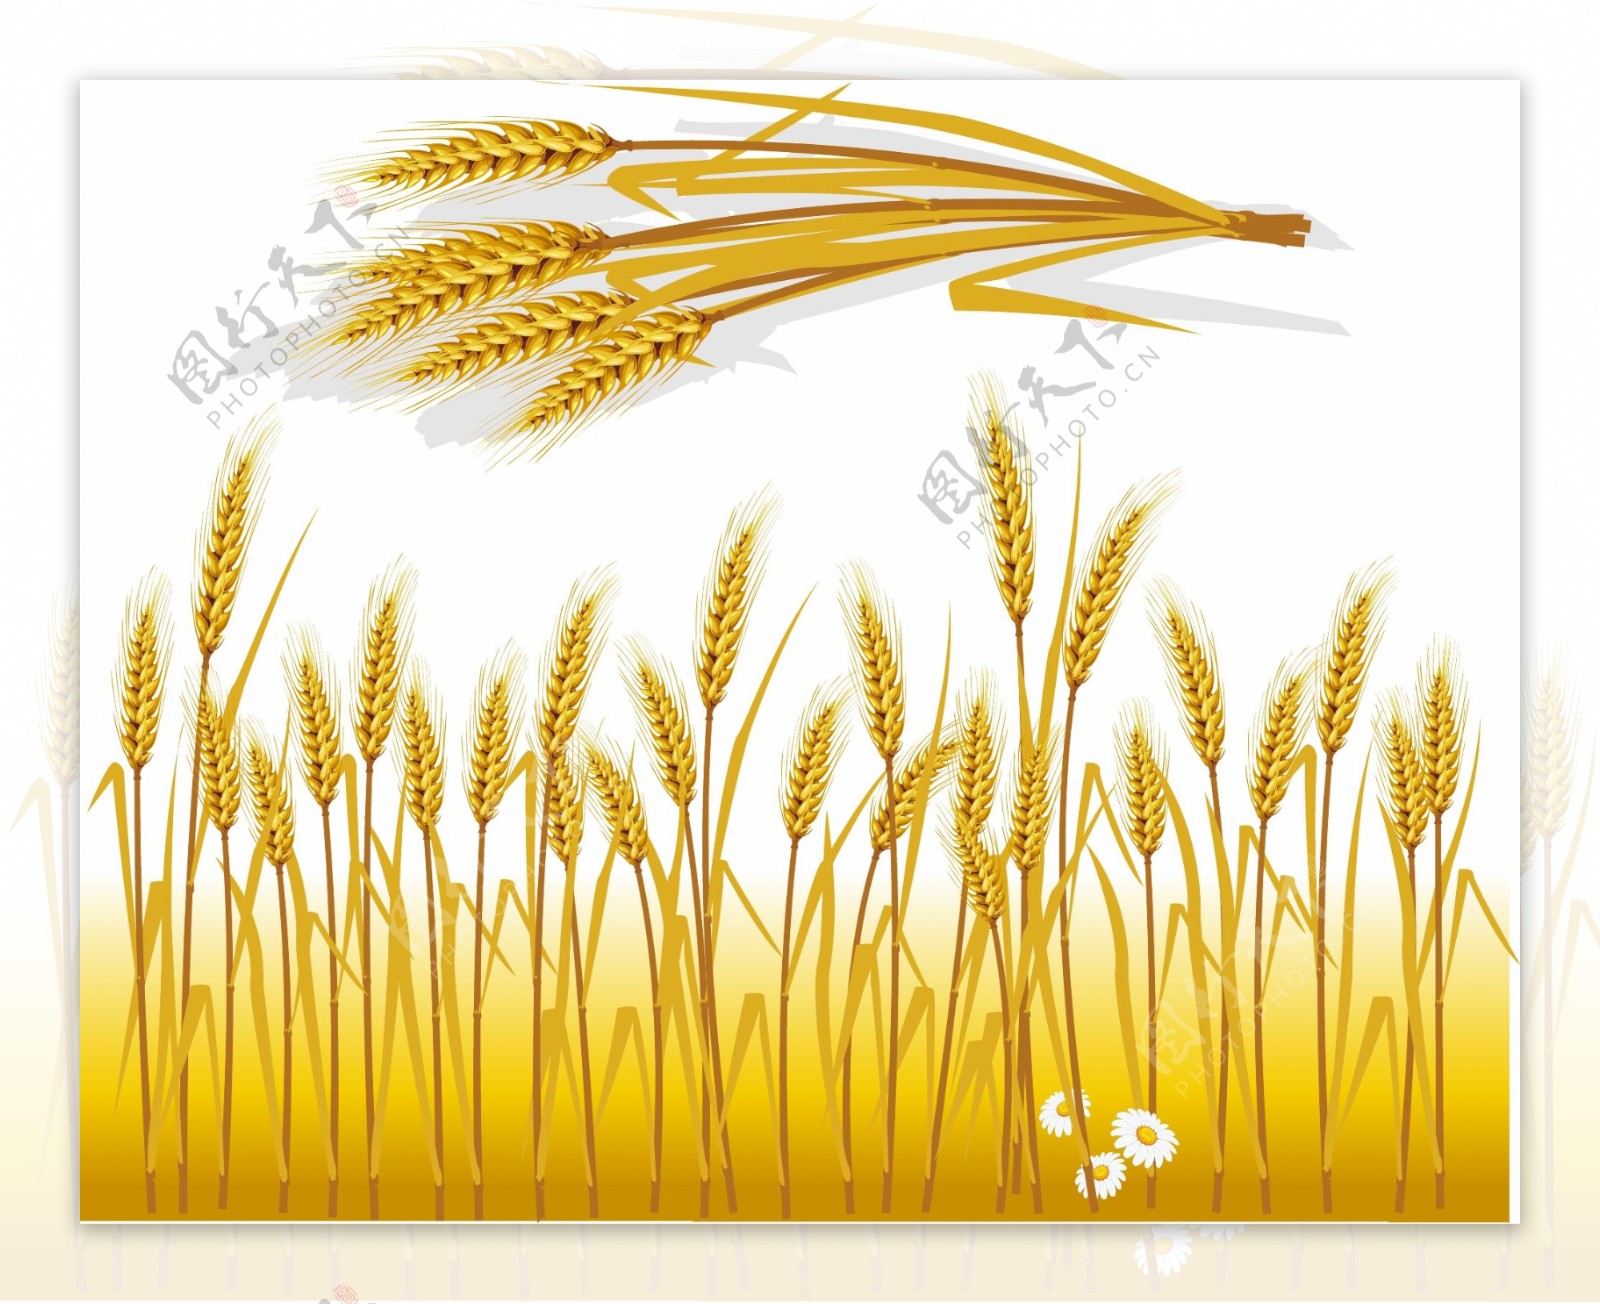 小麦粮食丰收麦子矢量素材